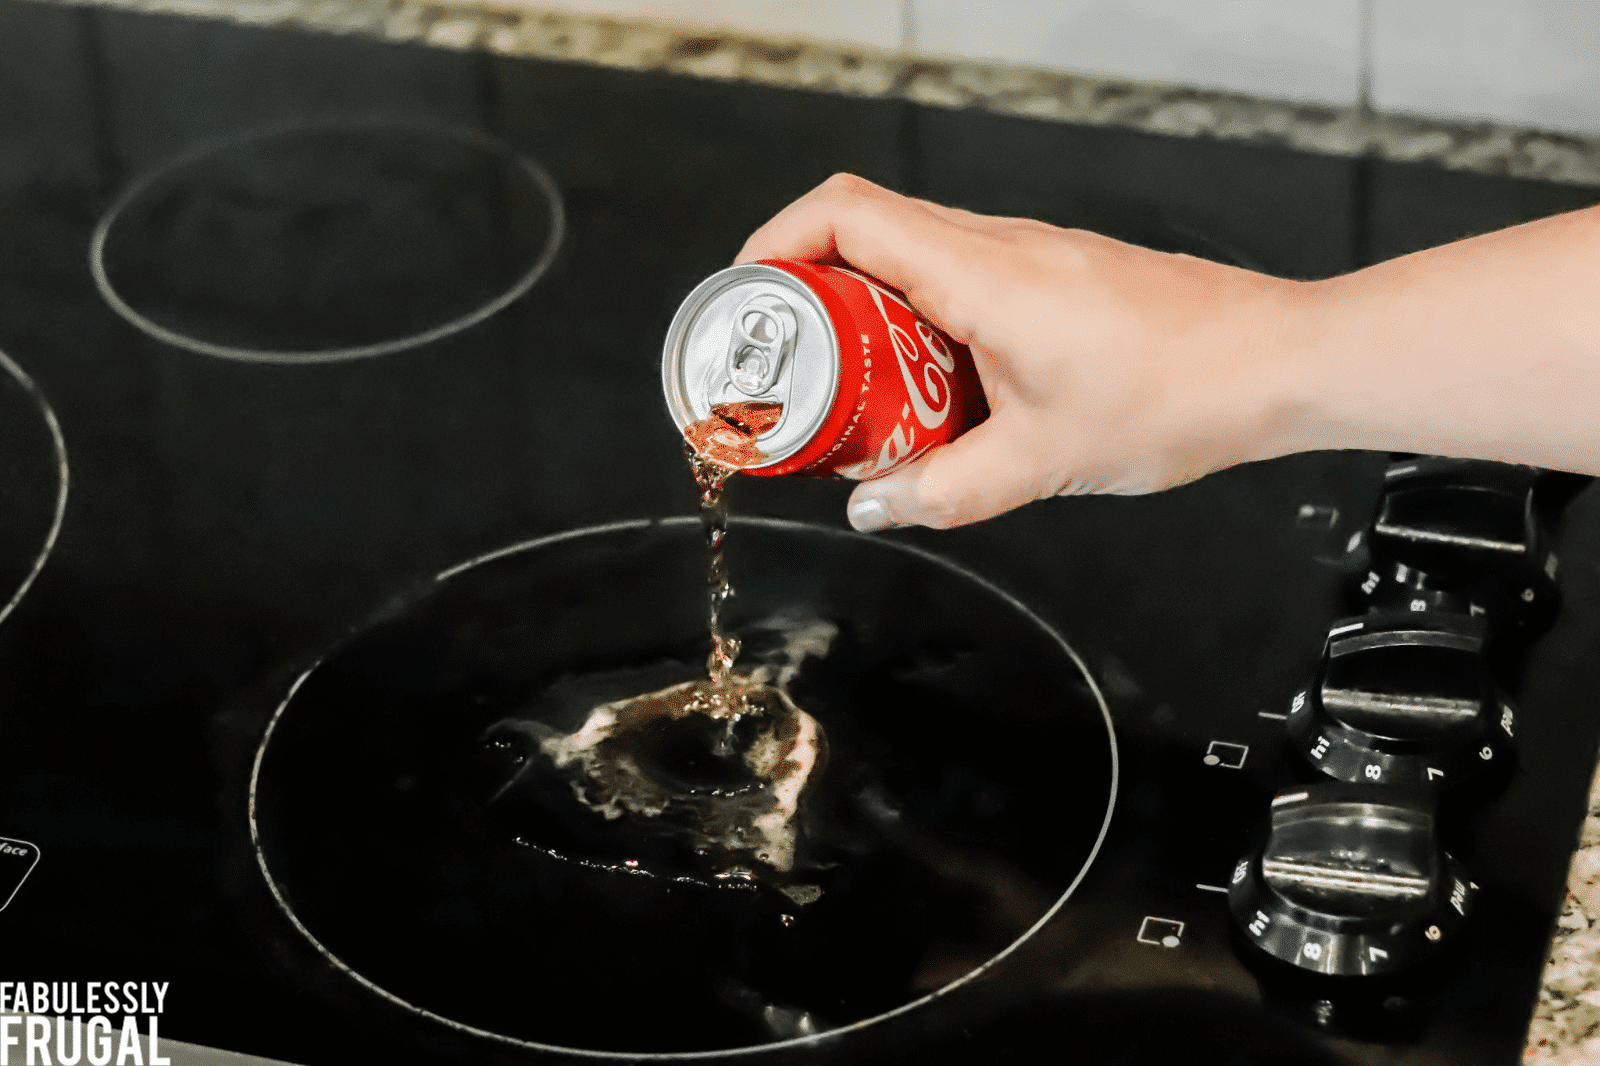 Coca-cola glass stovetop stain remover